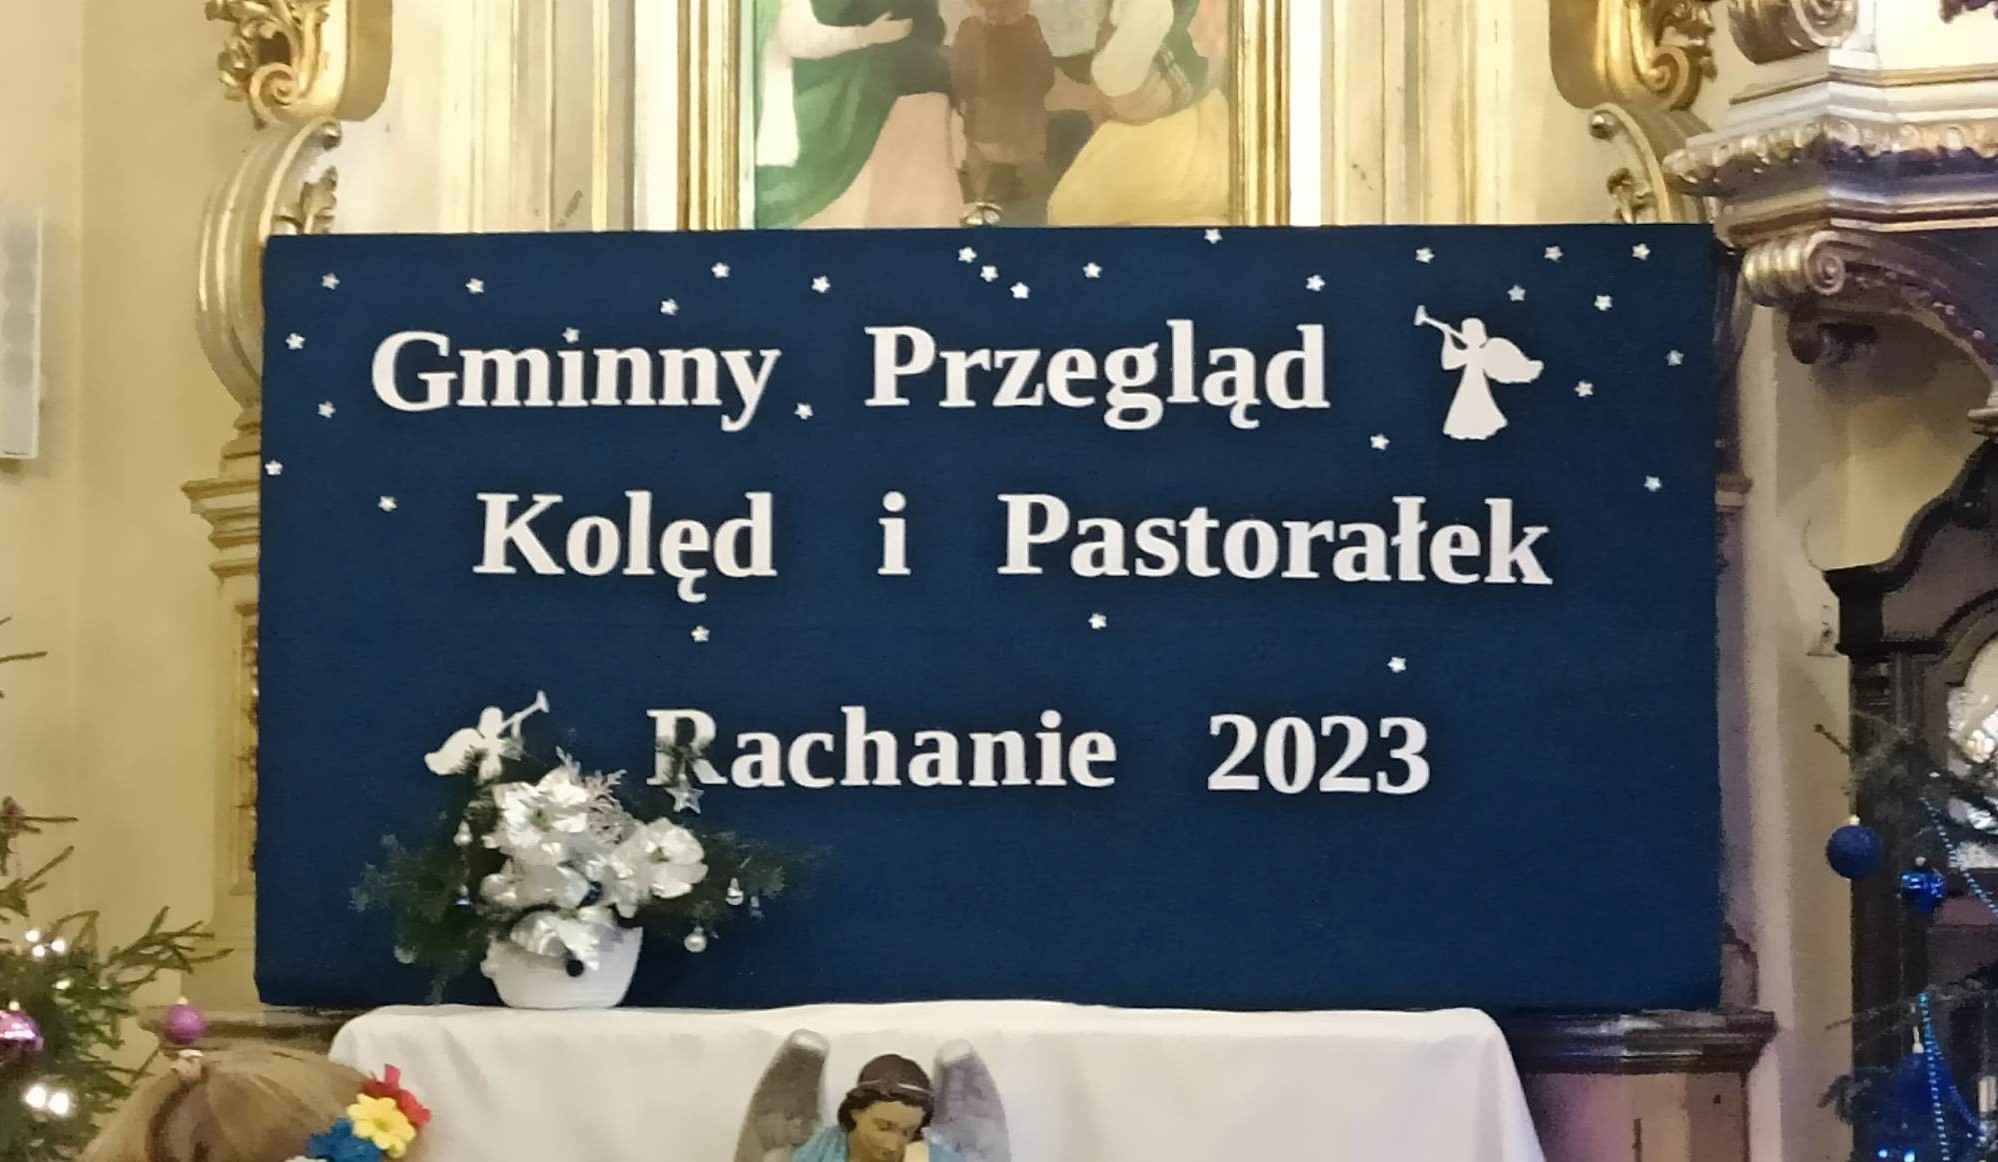 You are currently viewing Gminny Przegląd Kolęd i Pastorałek Rachanie 2023